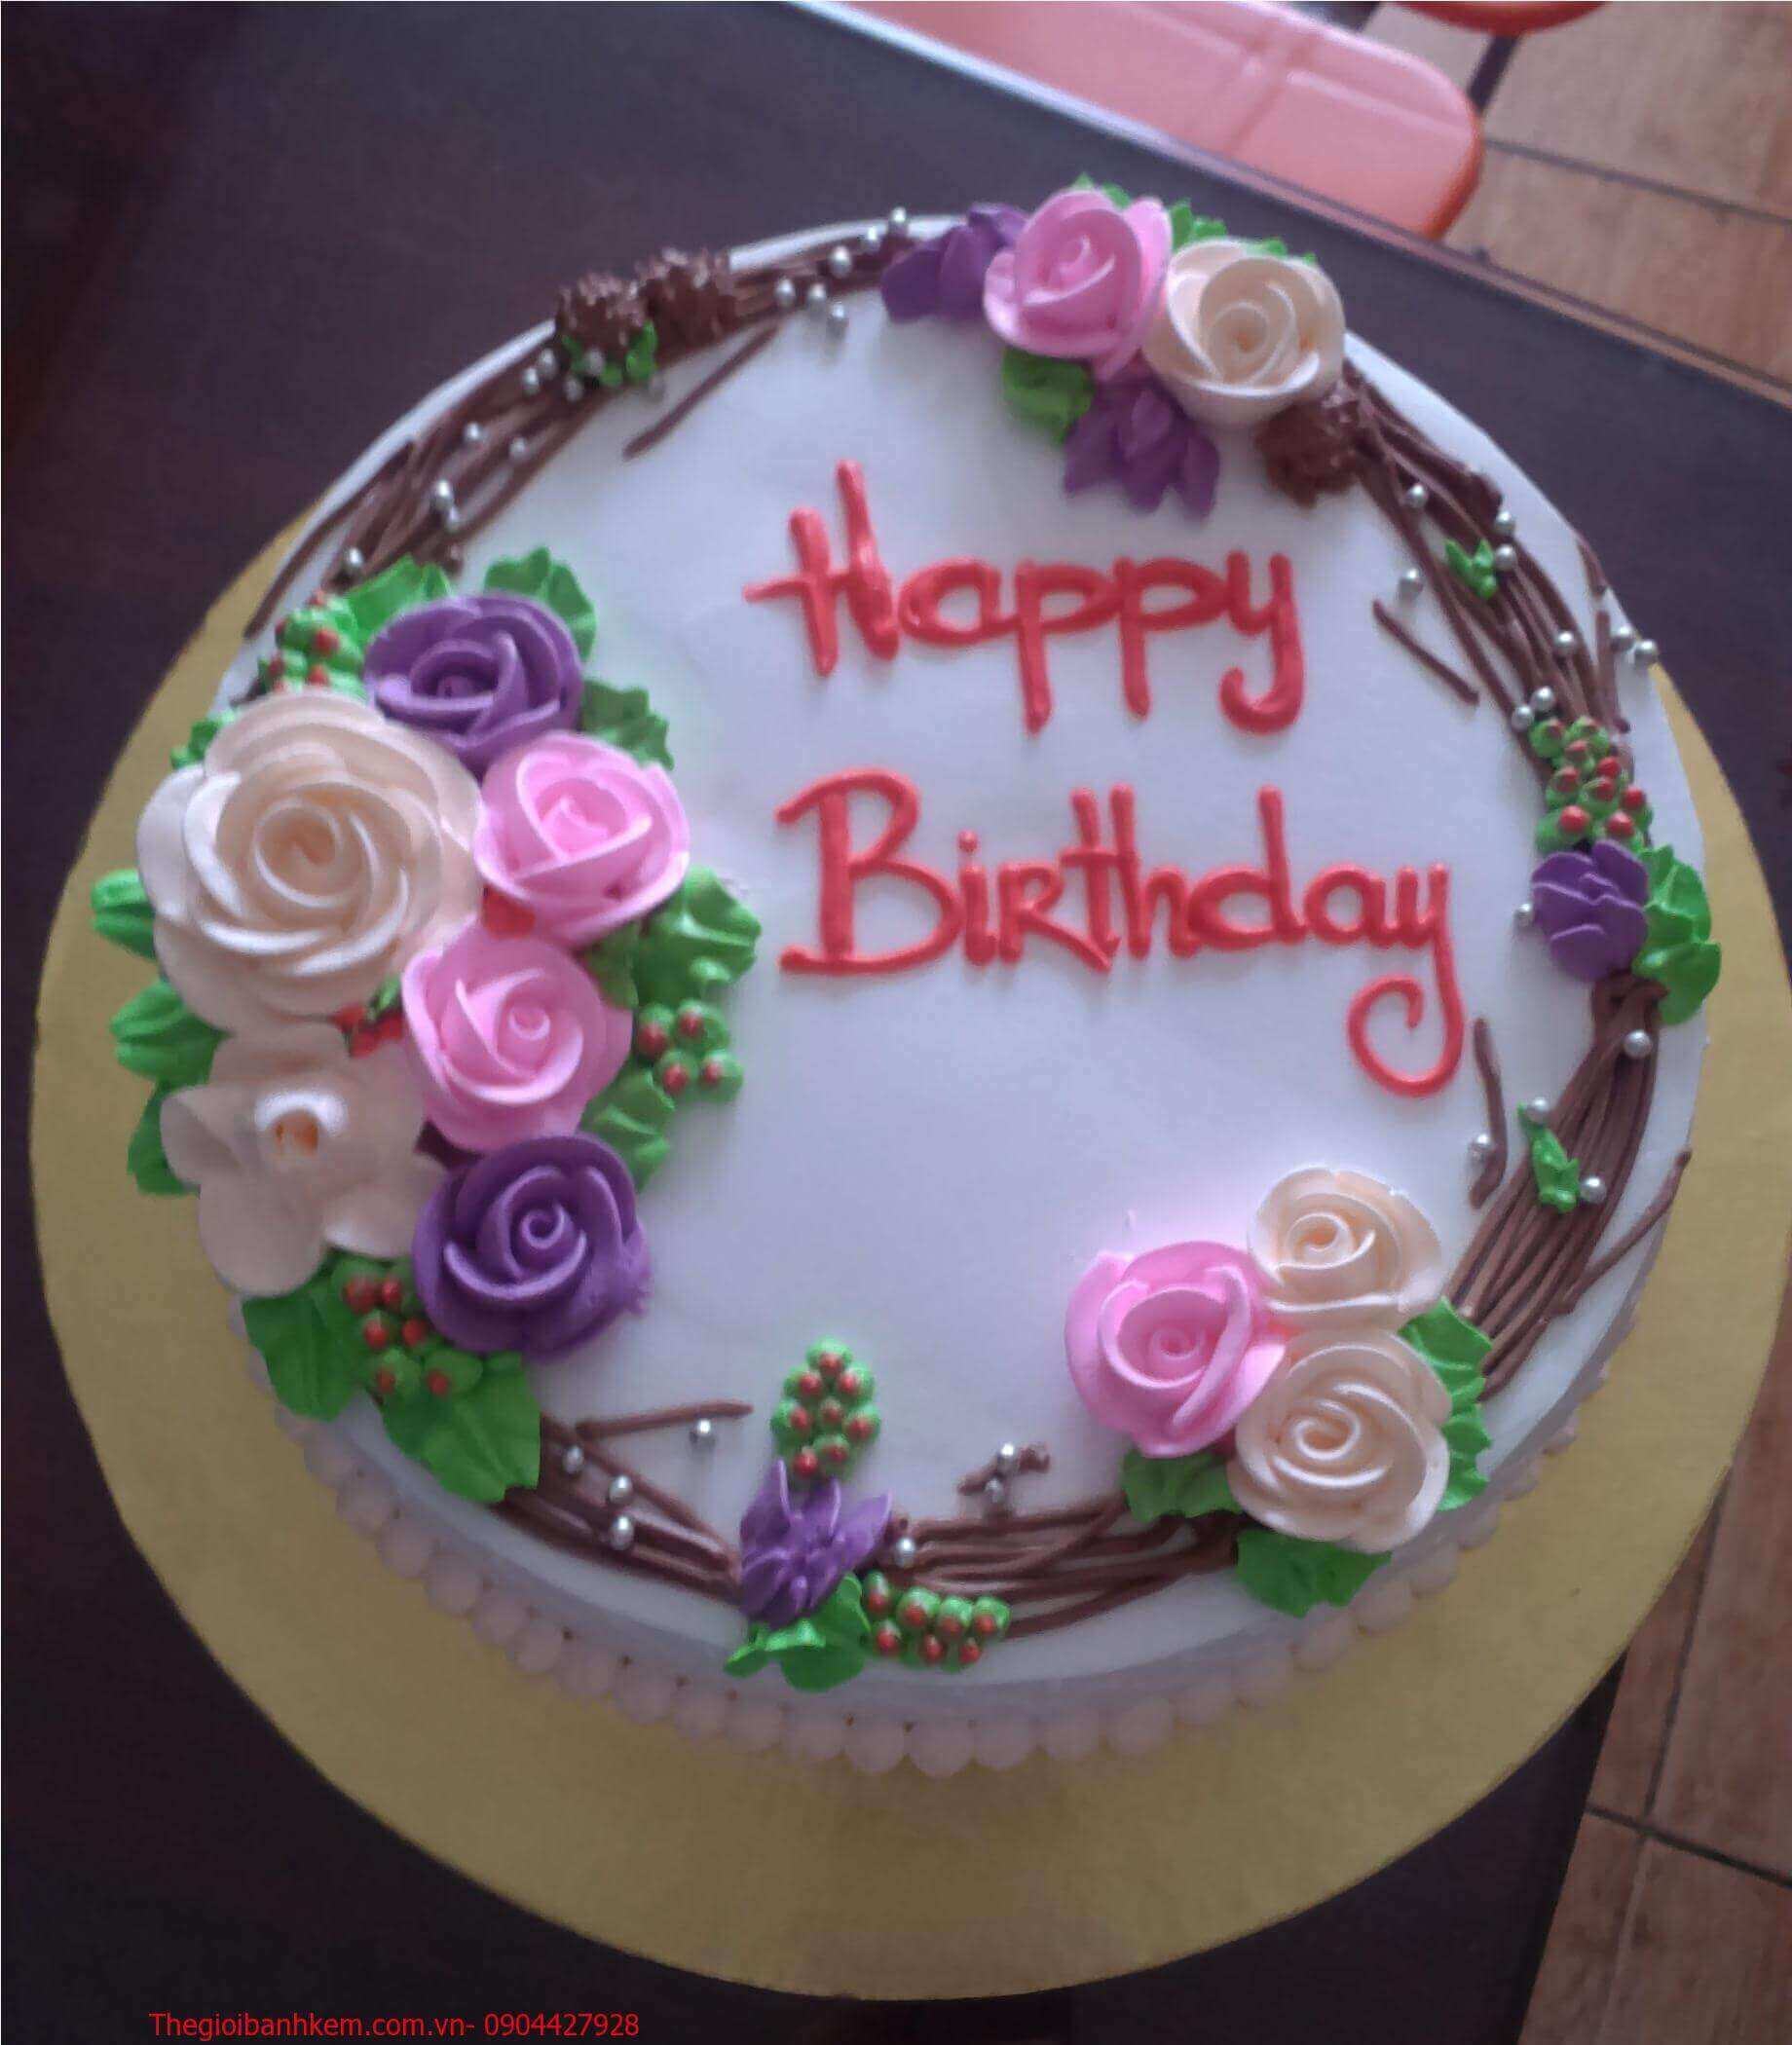 Chiếc bánh sinh nhật đơn giản mà cũng tuyệt vời để tặng người yêu